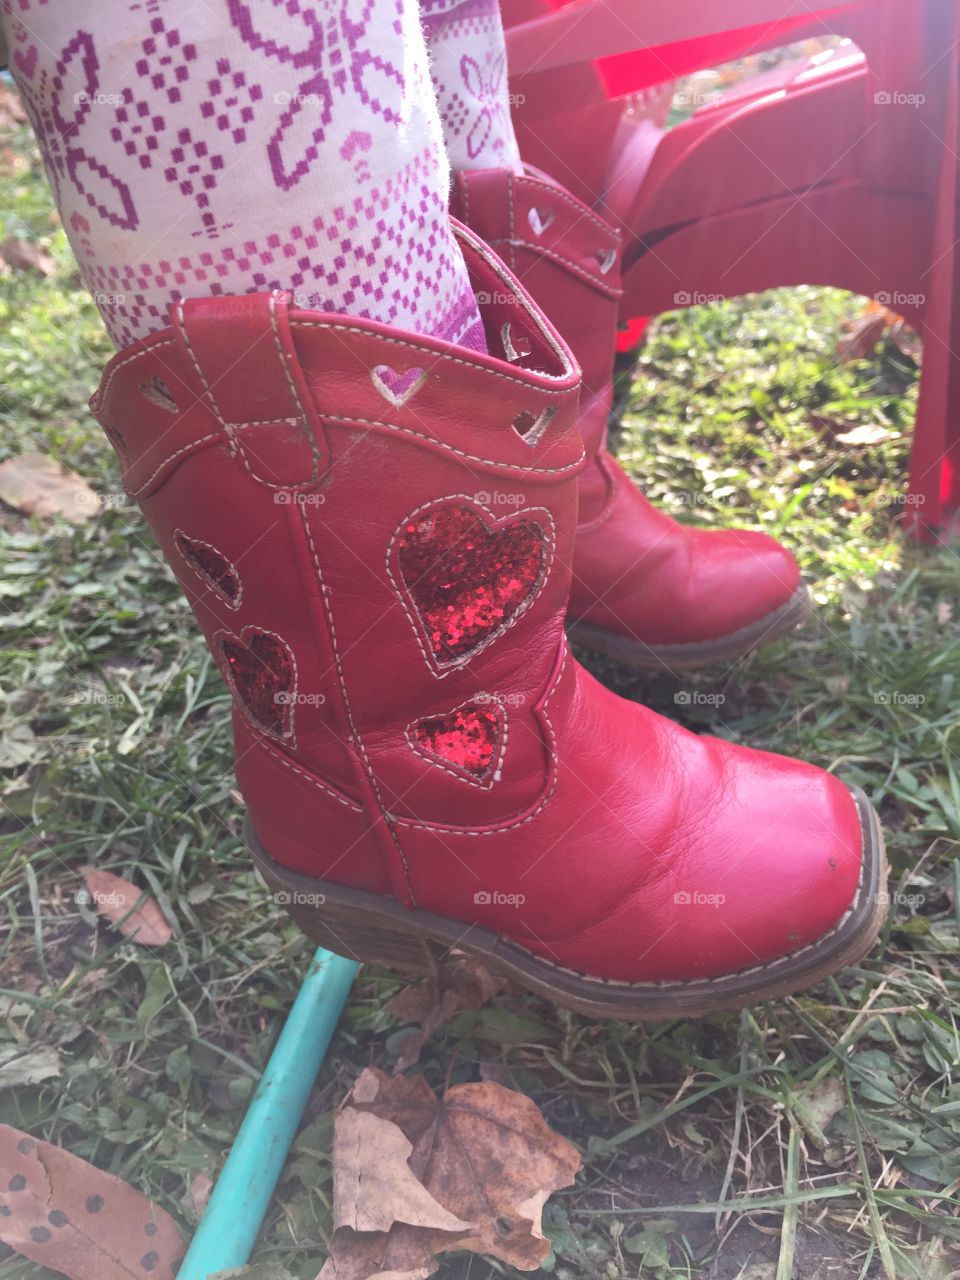 A girls cowboy boots 